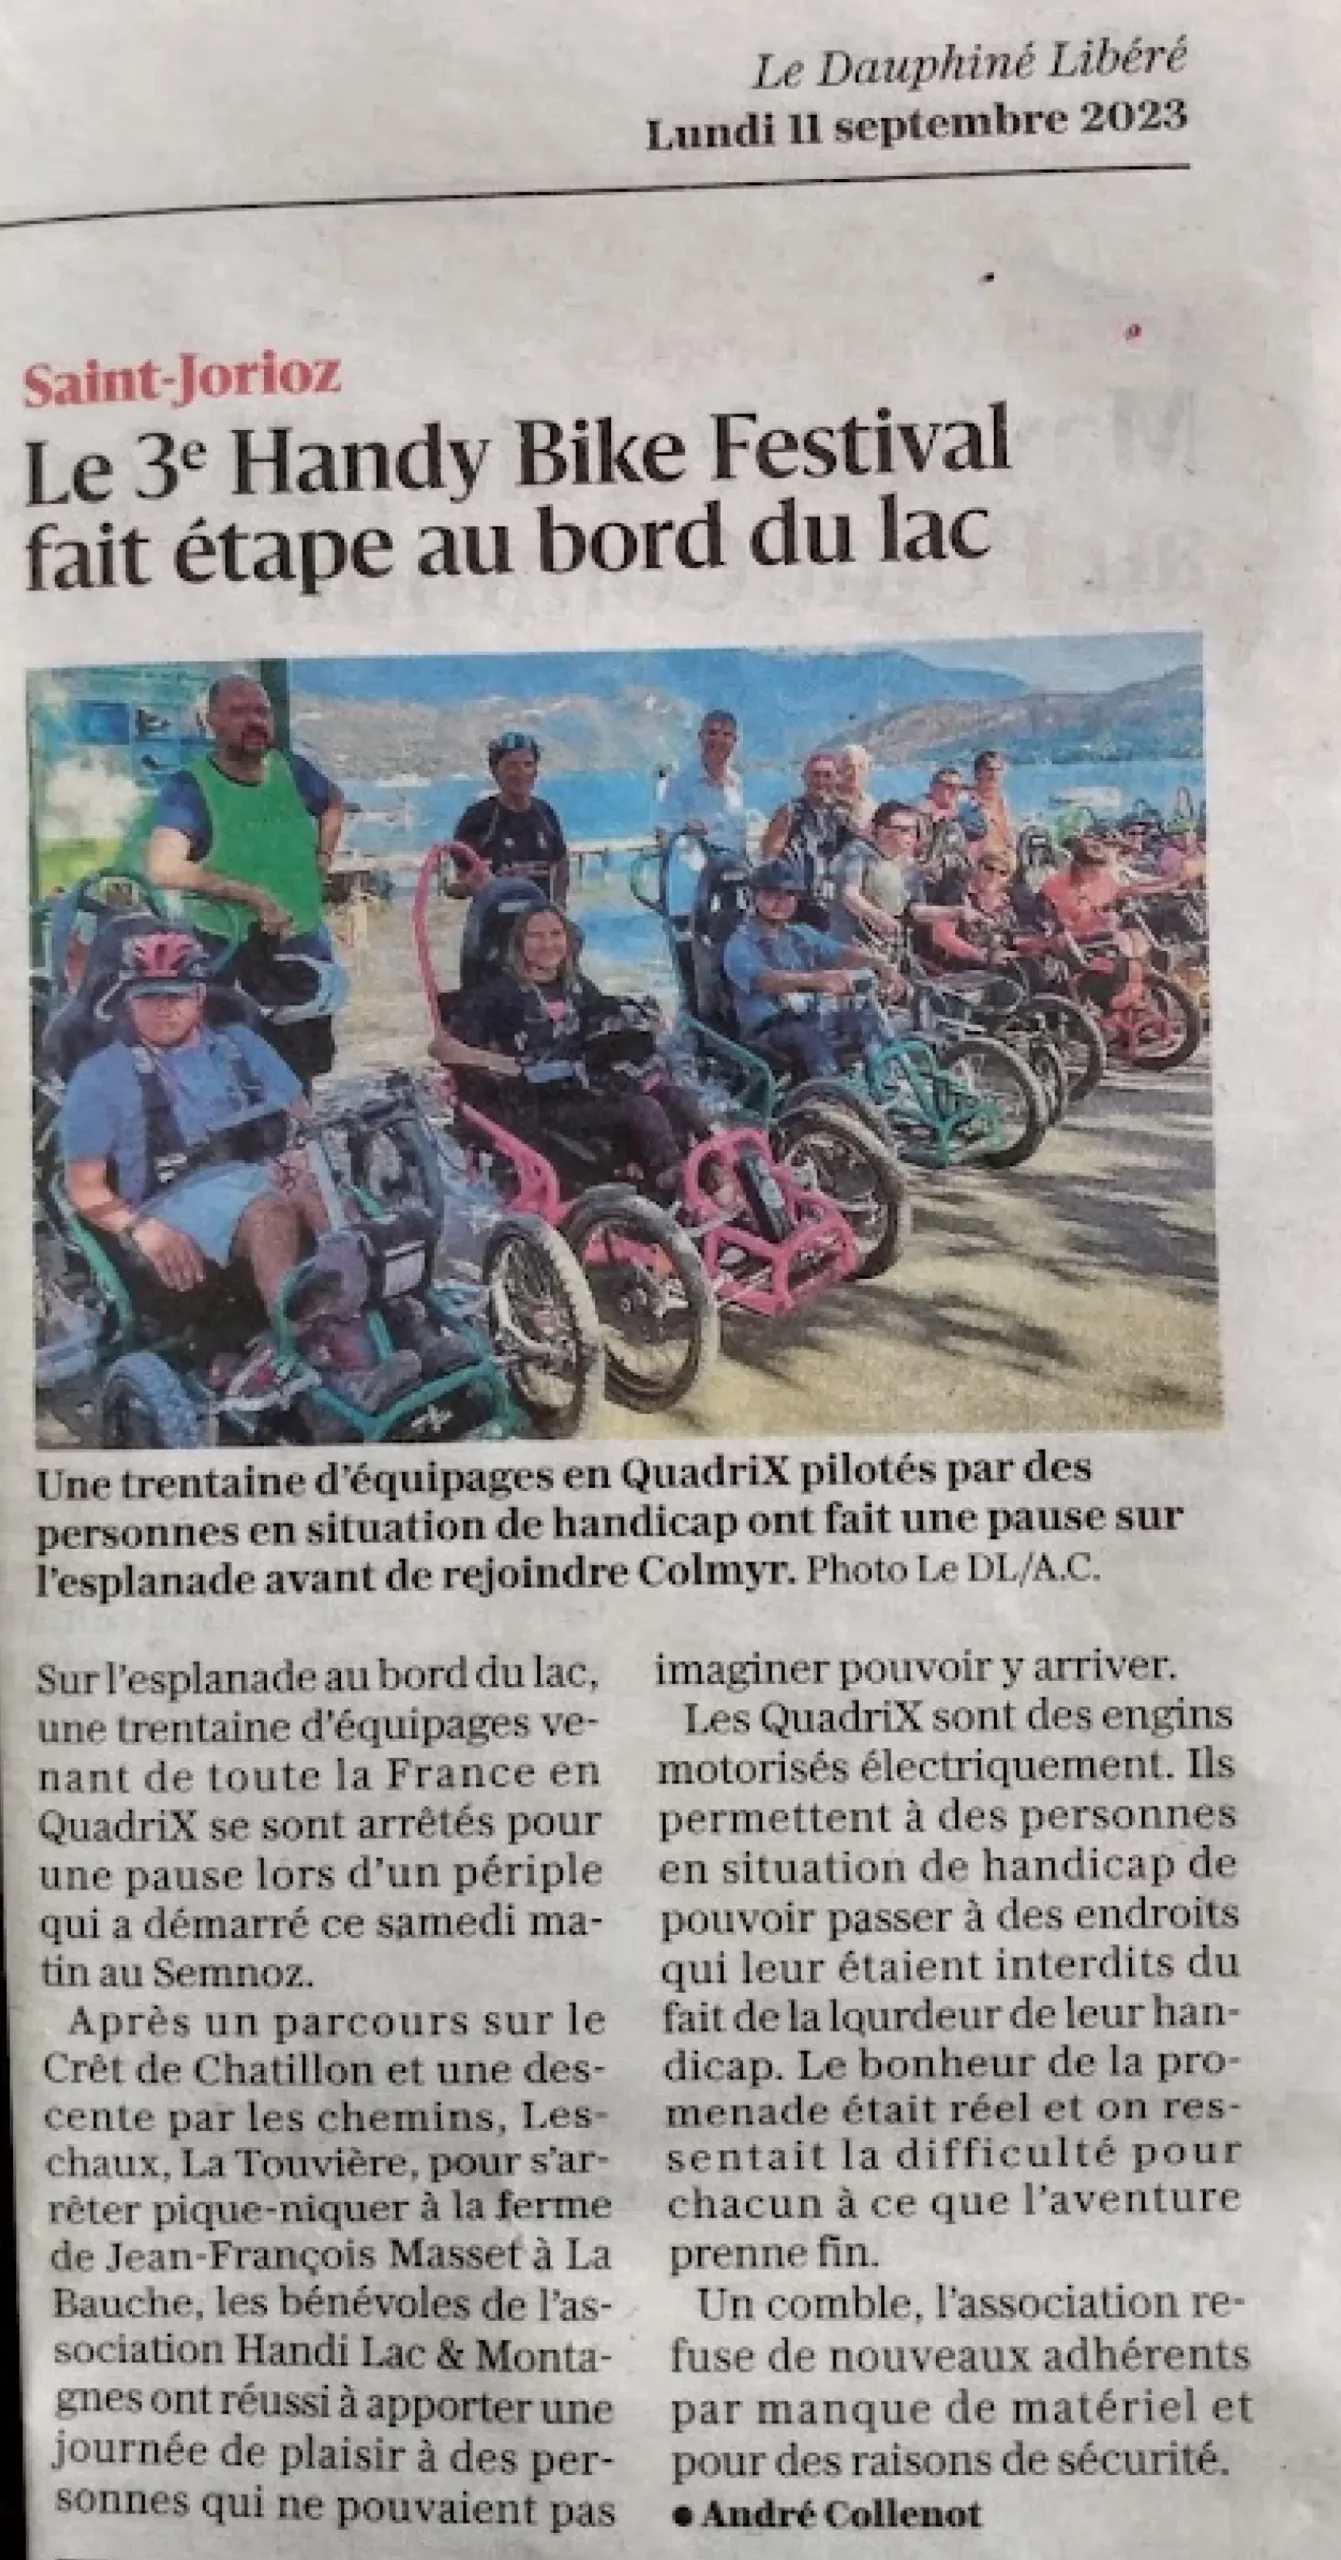 Article du Dauphiné Libéré paru le 11 septembre 2023 avec pour titre "Le 3e Handy Bike Festival fait étape au bord du lac"